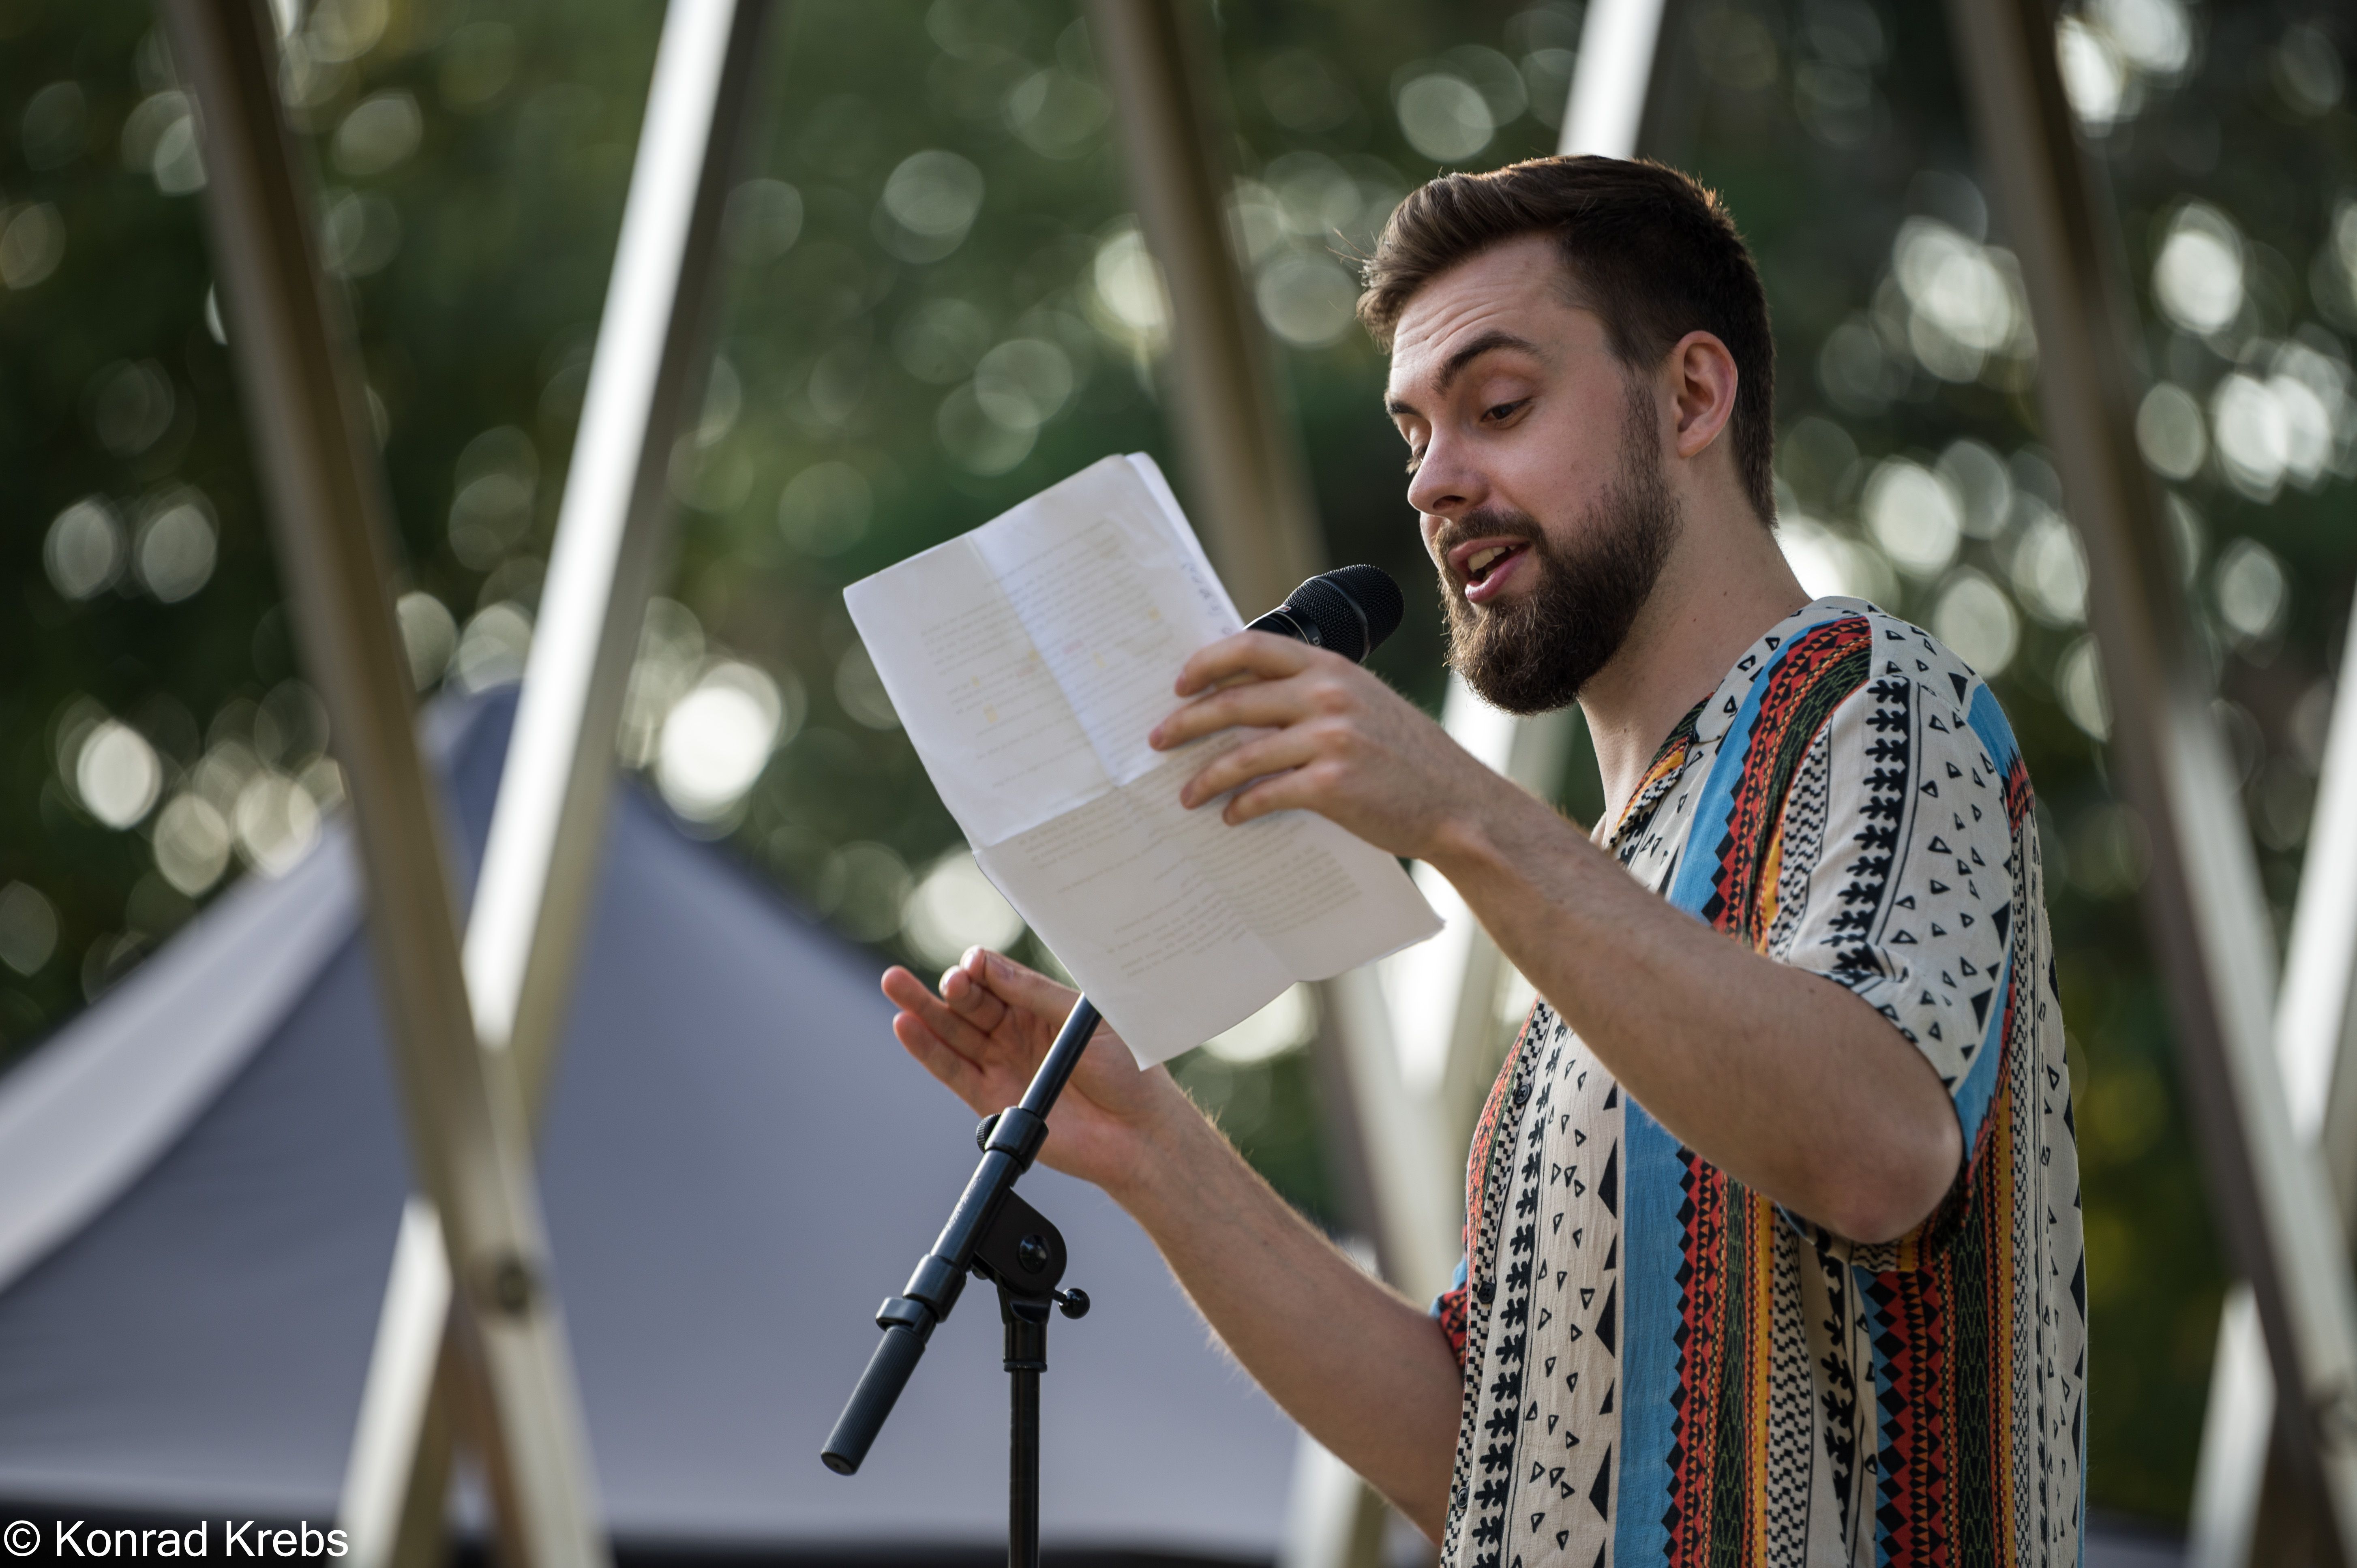 Fotografie des Slam-Poet Max Raths in einem bunt gestreiftem T-shirt mit Ethno-Muster Er steht vor einem Mikrofon & hat ein Stück Papier in der Hand.